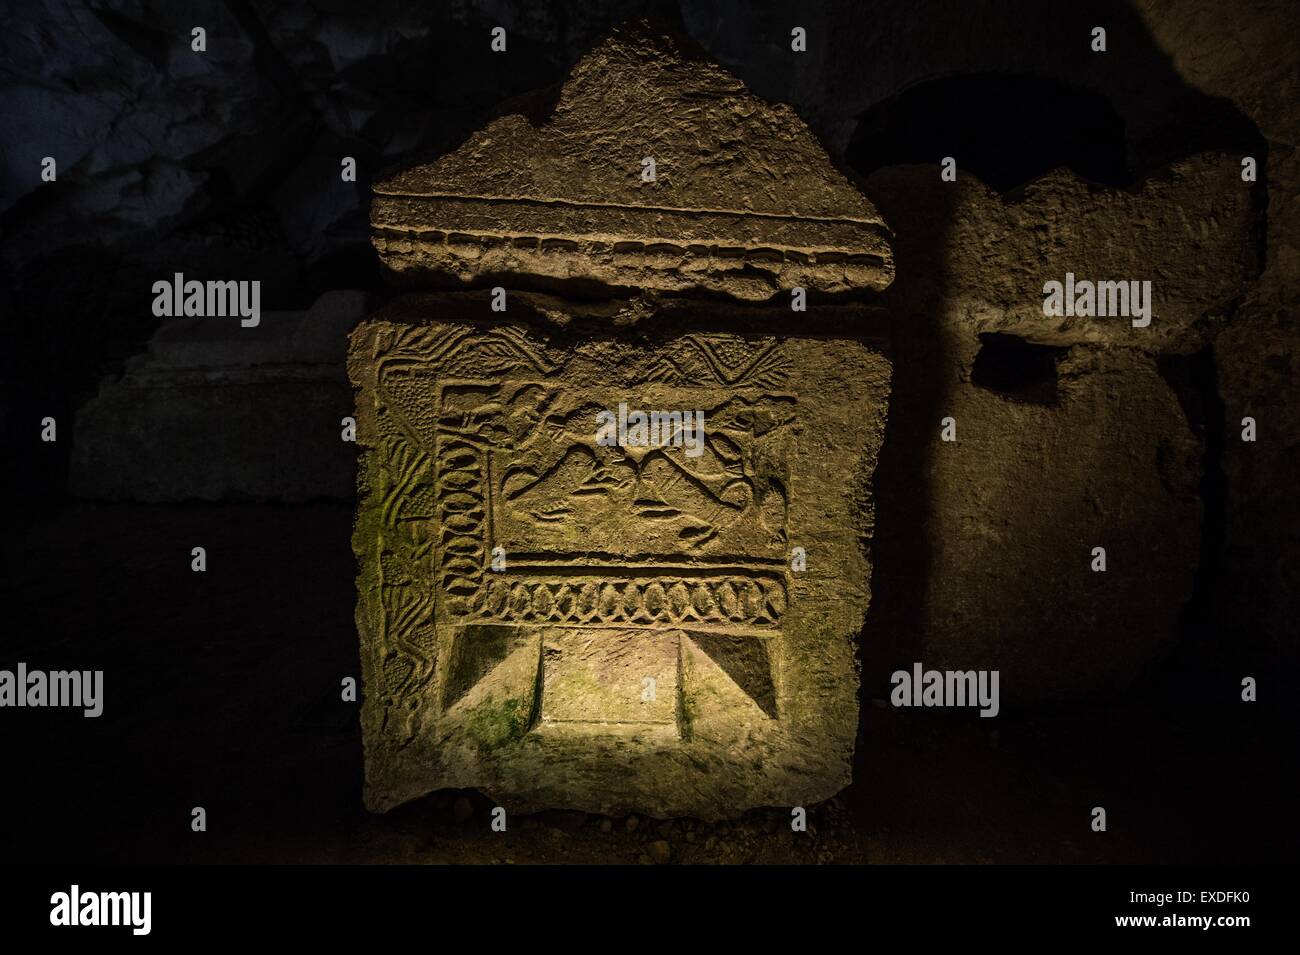 (150712) -- BET She'arim, le 12 juillet 2015 (Xinhua) -- les animaux sculptés sont vus sur un sarcophage dans la grotte des cercueils à la Nécropole de Bet She'arim en Israël, le 11 juillet 2015. Nécropole de Bet She'arim en Israël, l'emblème de renouveau juif, a été inscrit sur la Liste du patrimoine mondial de l'UNESCO le 4 juillet 2015. Composé d'une série de catacombes, la nécropole développée à partir du 2e siècle avant notre ère comme le principal lieu de sépulture juive en dehors de Jérusalem à la suite de l'échec de la seconde révolte juive contre la domination romaine. Situé à au sud-est de la ville de Haïfa, ces catacombes sont un trésor de l'ar Banque D'Images